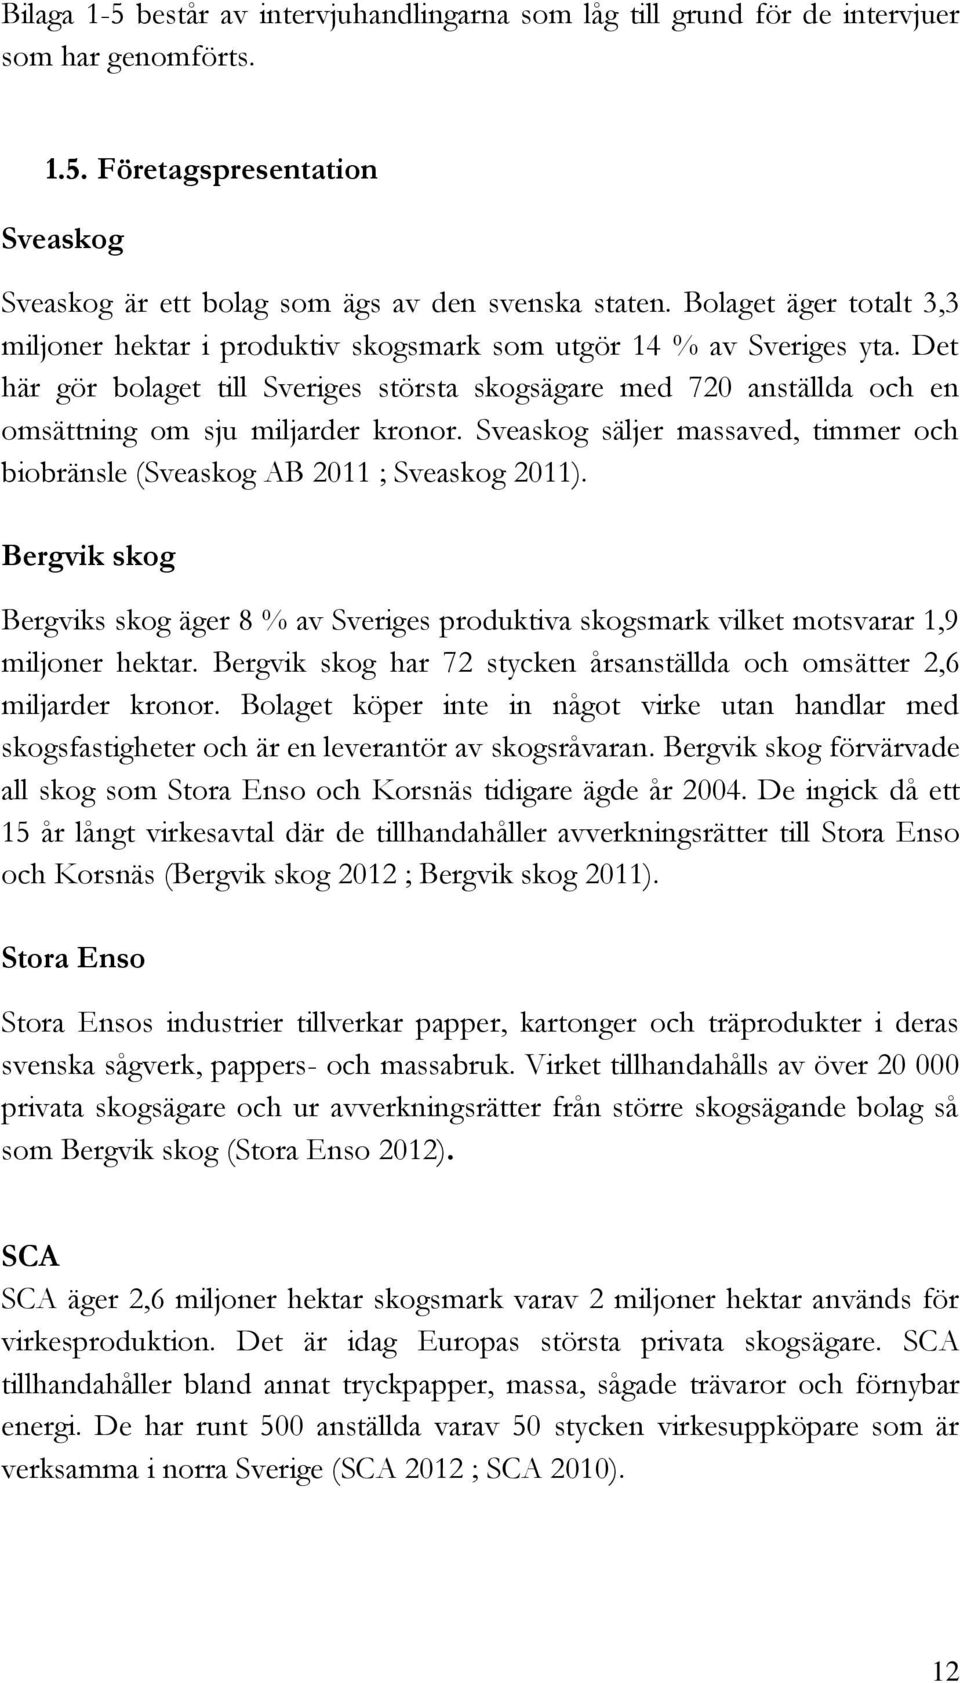 Det här gör bolaget till Sveriges största skogsägare med 720 anställda och en omsättning om sju miljarder kronor. Sveaskog säljer massaved, timmer och biobränsle (Sveaskog AB 2011 ; Sveaskog 2011).